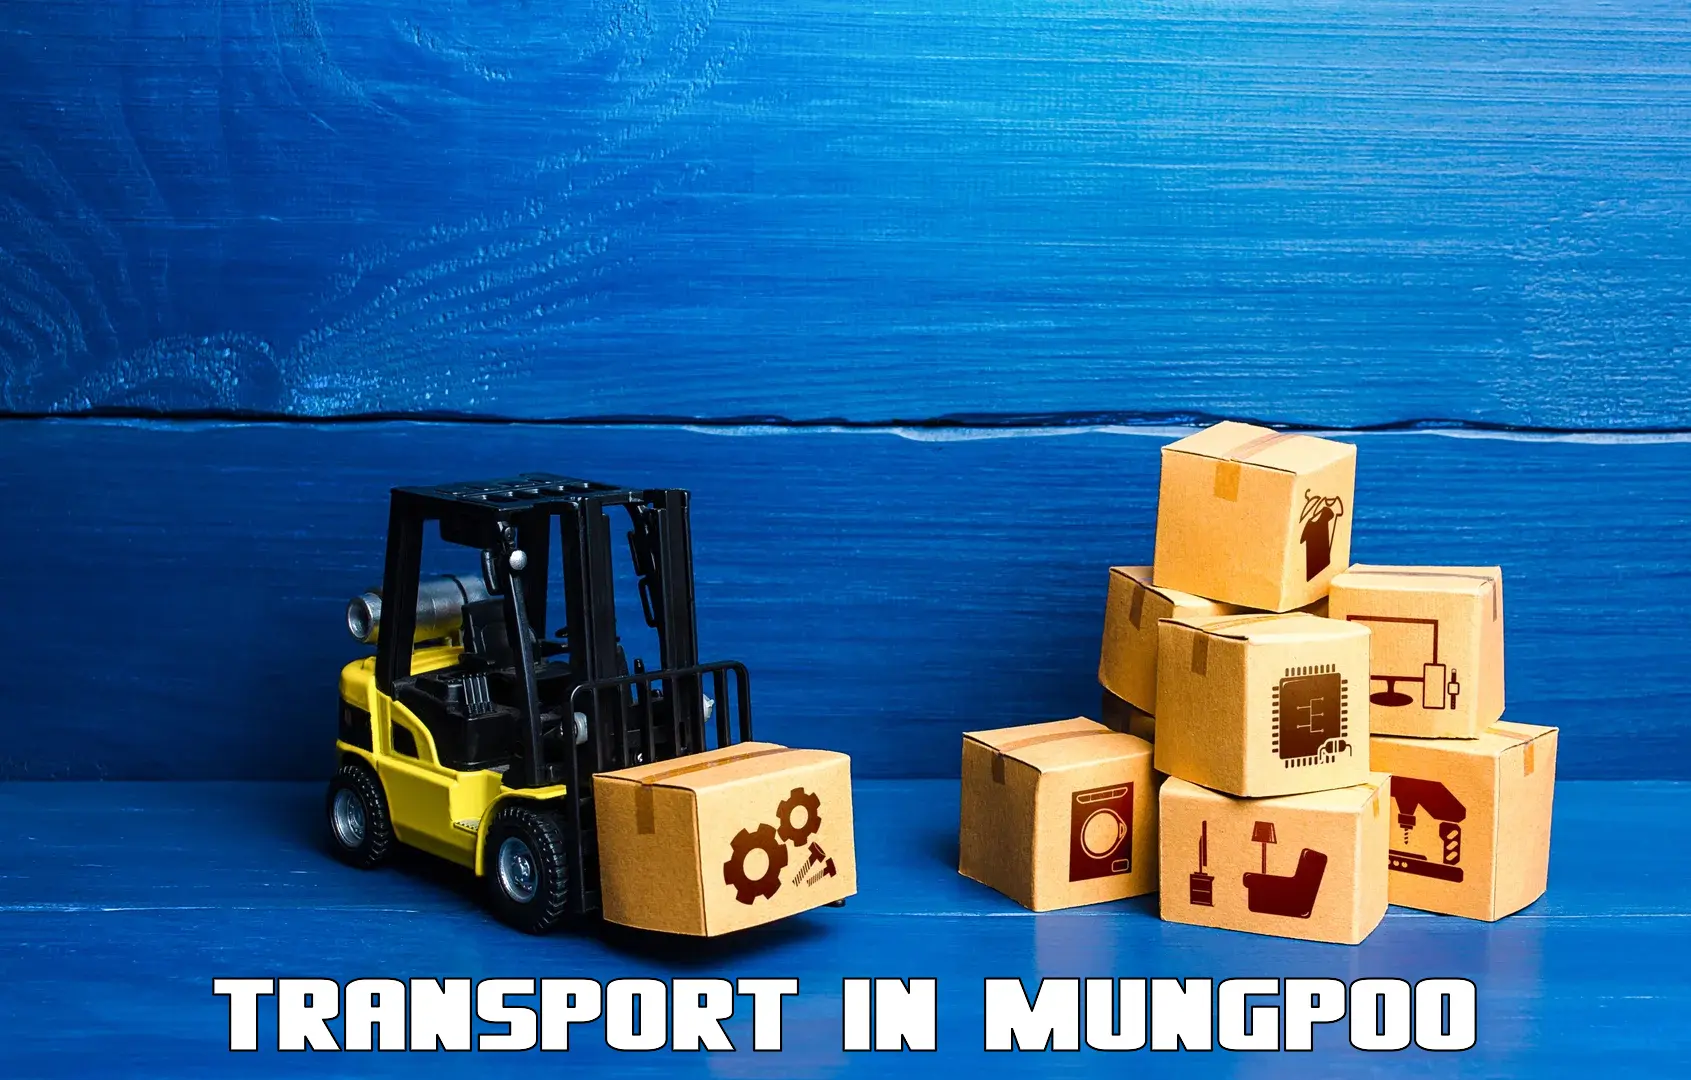 Bike shipping service in Mungpoo